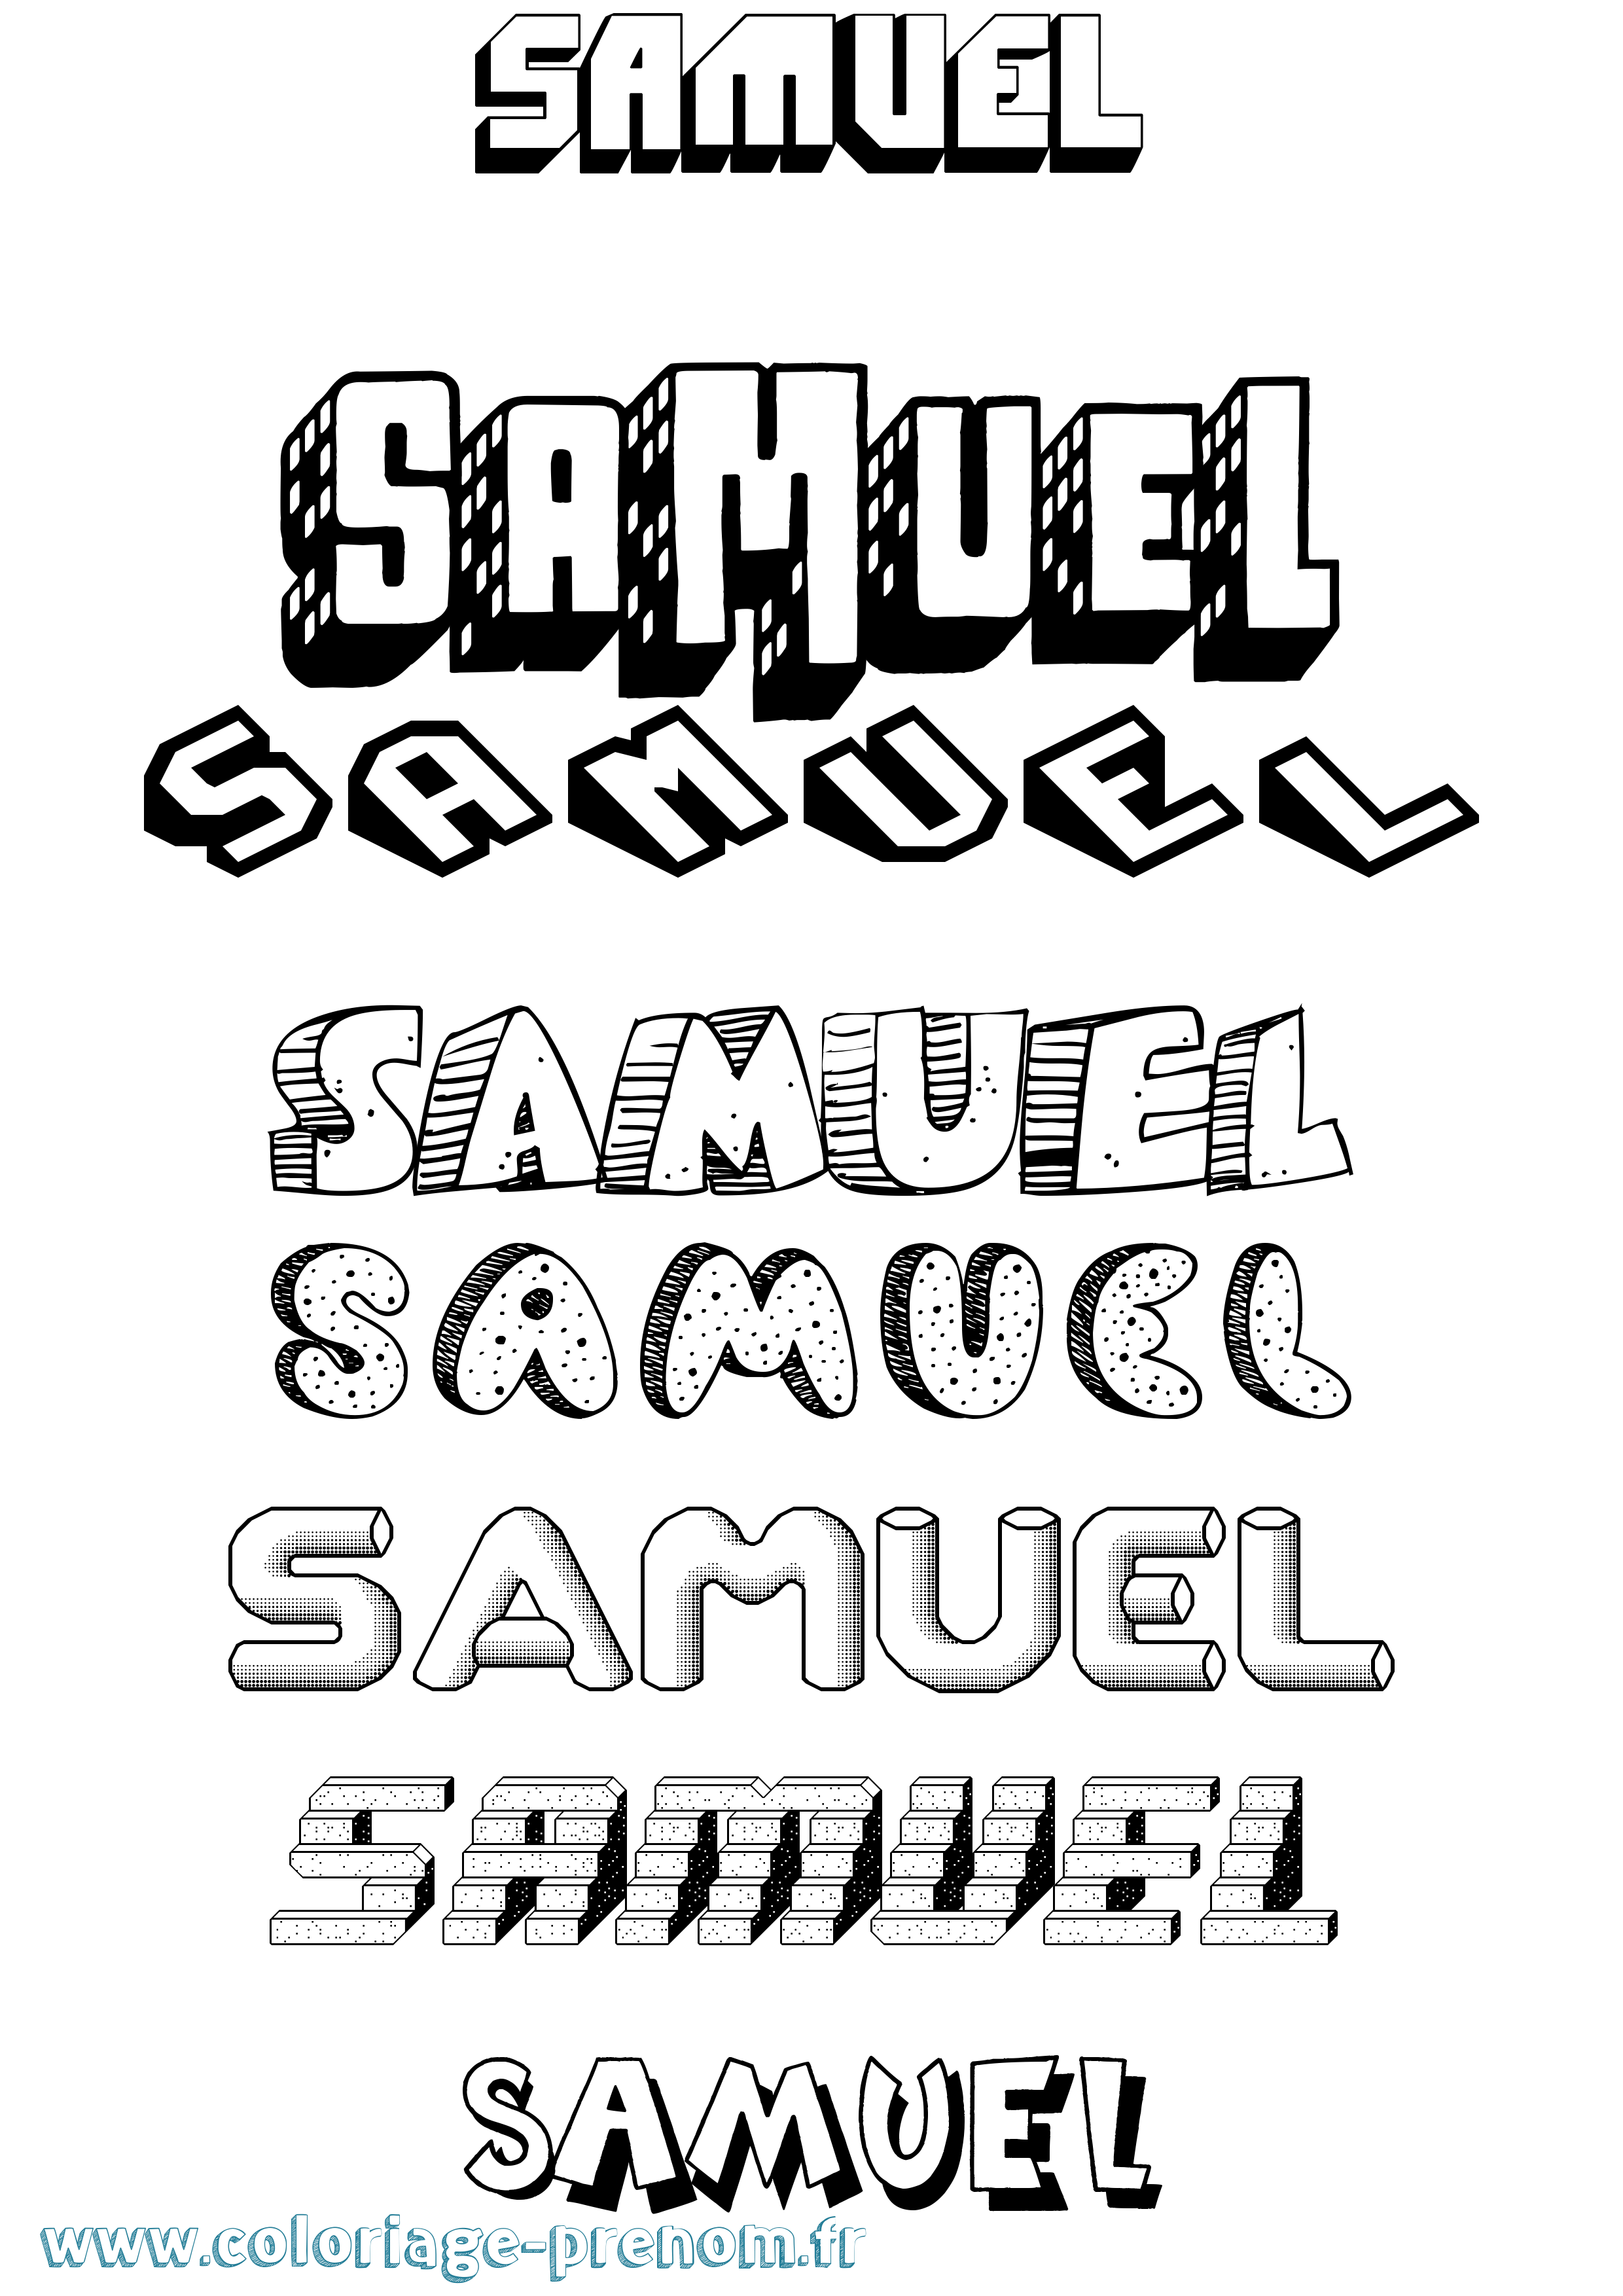 Coloriage prénom Samuel